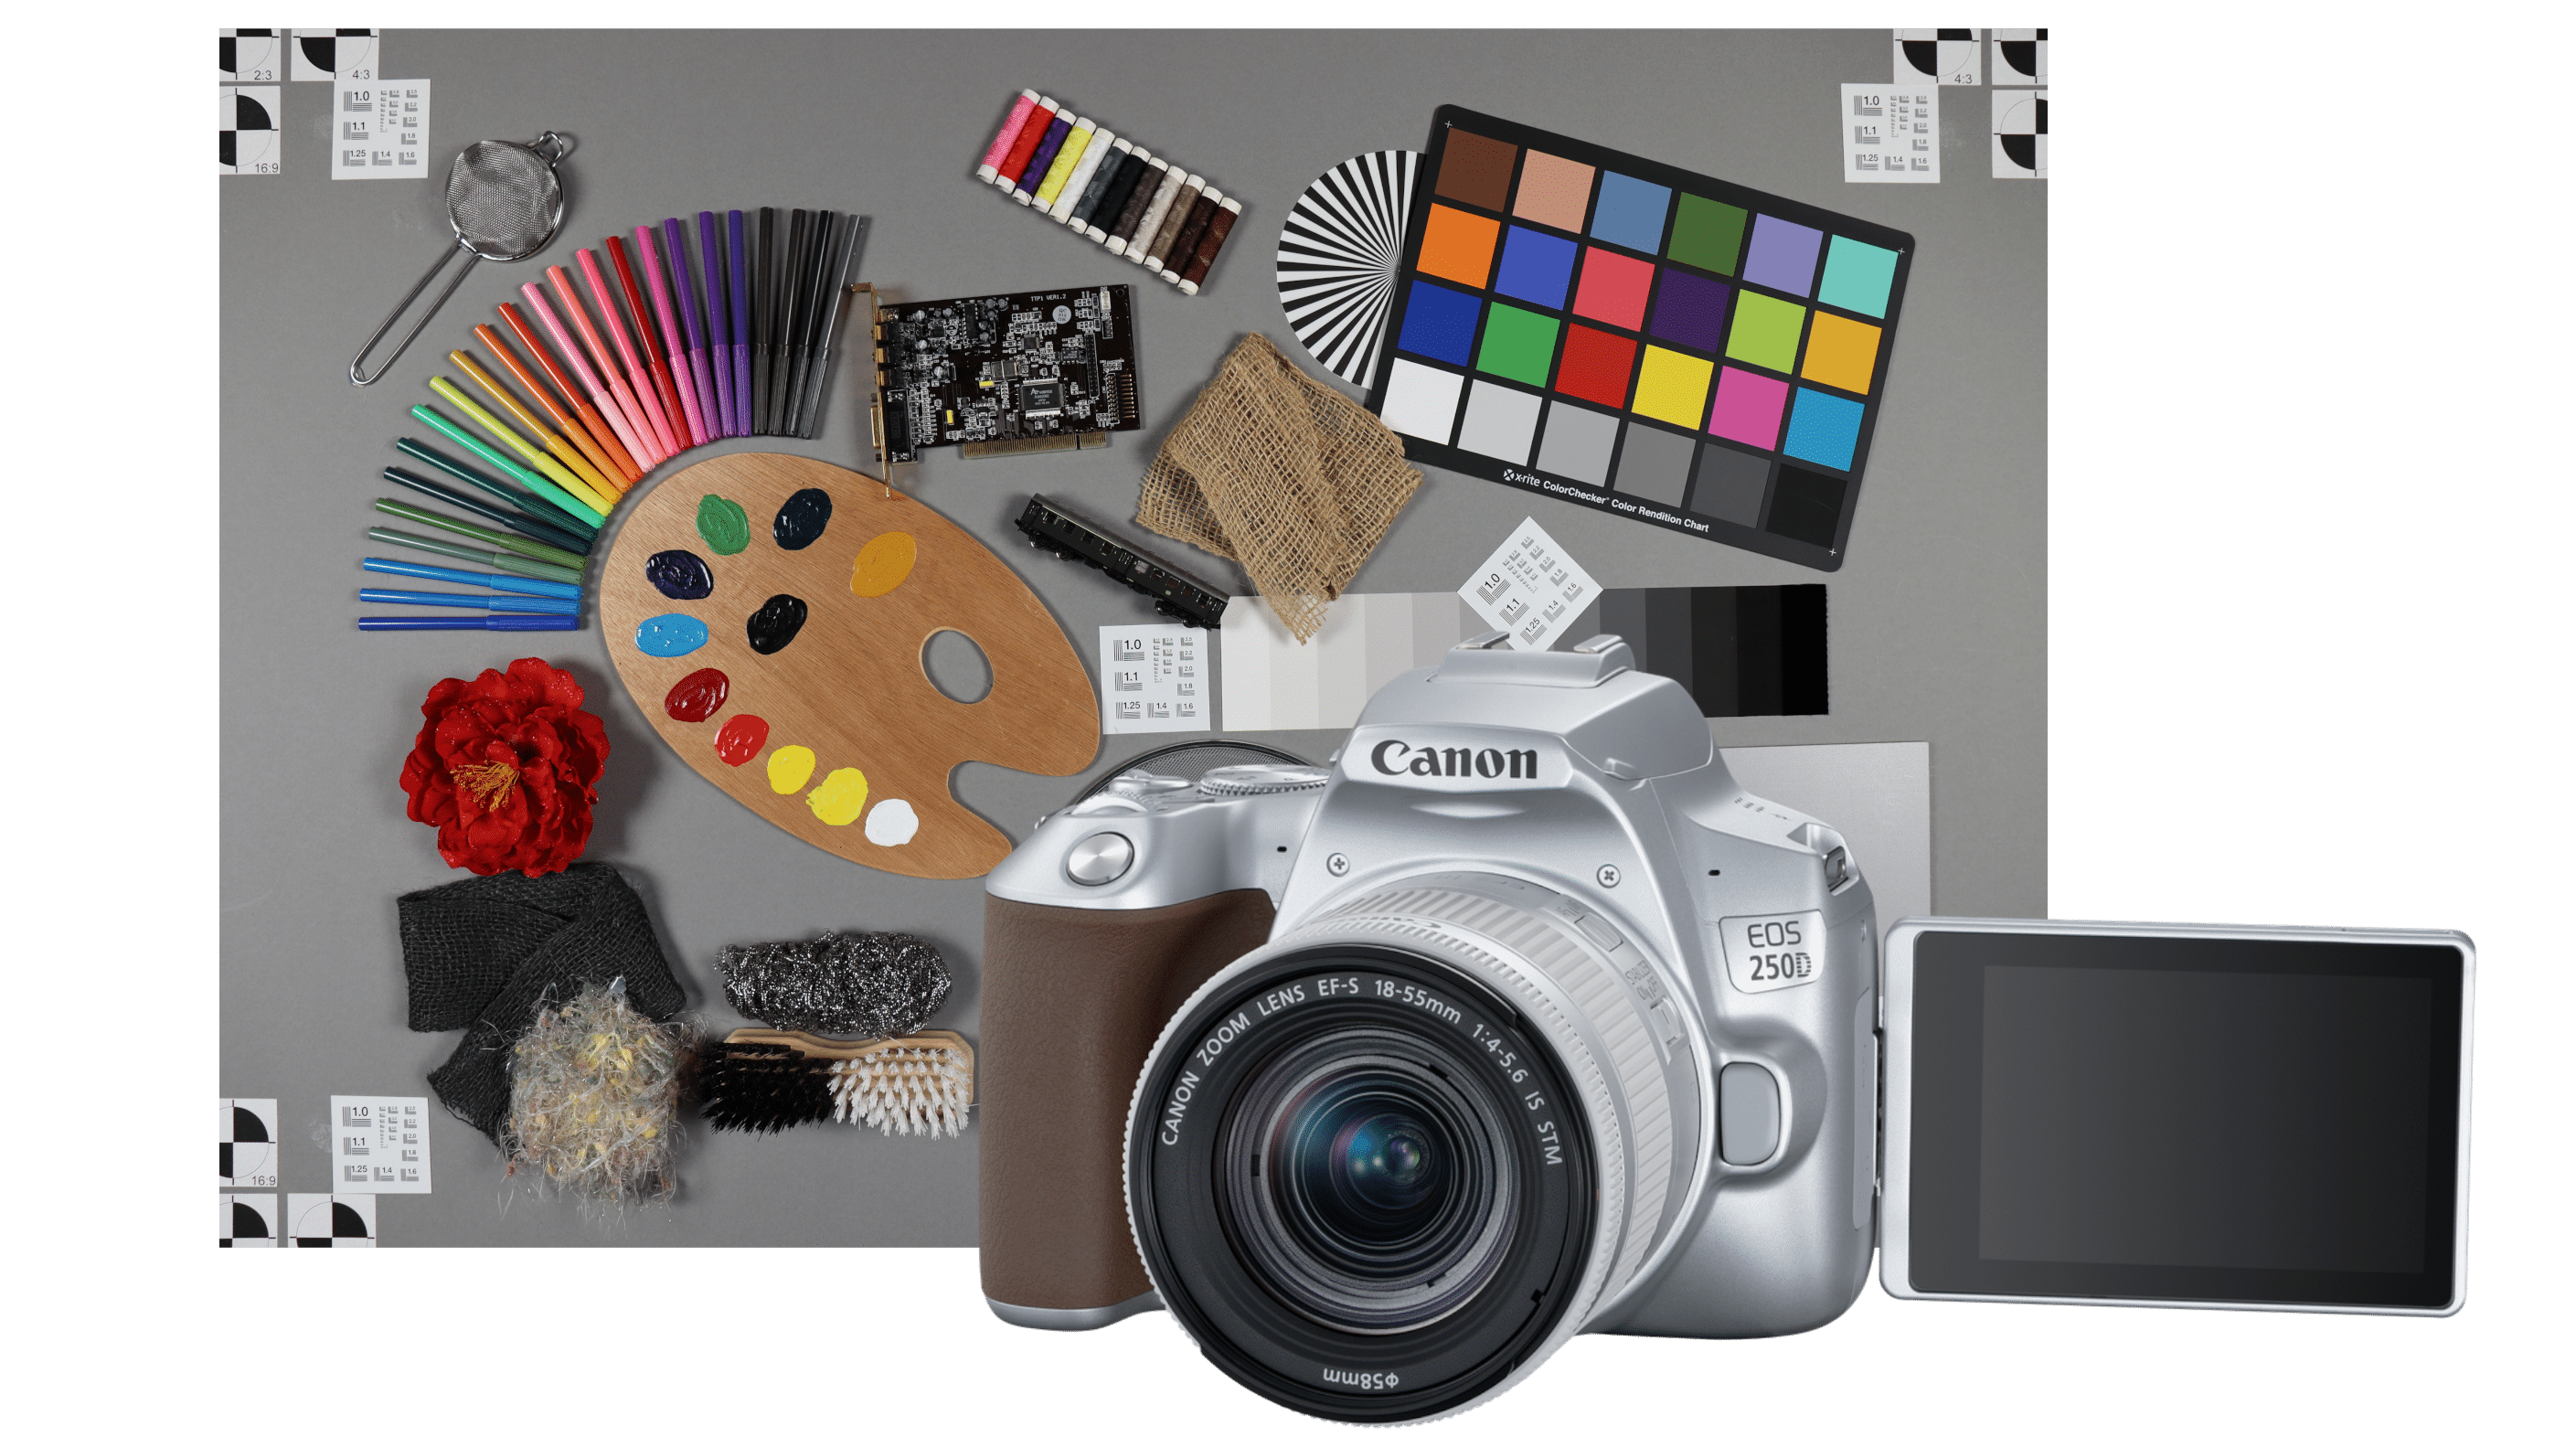 Canon EOS 250D: Wer braucht diese Einsteiger-Spiegelreflexkamera?